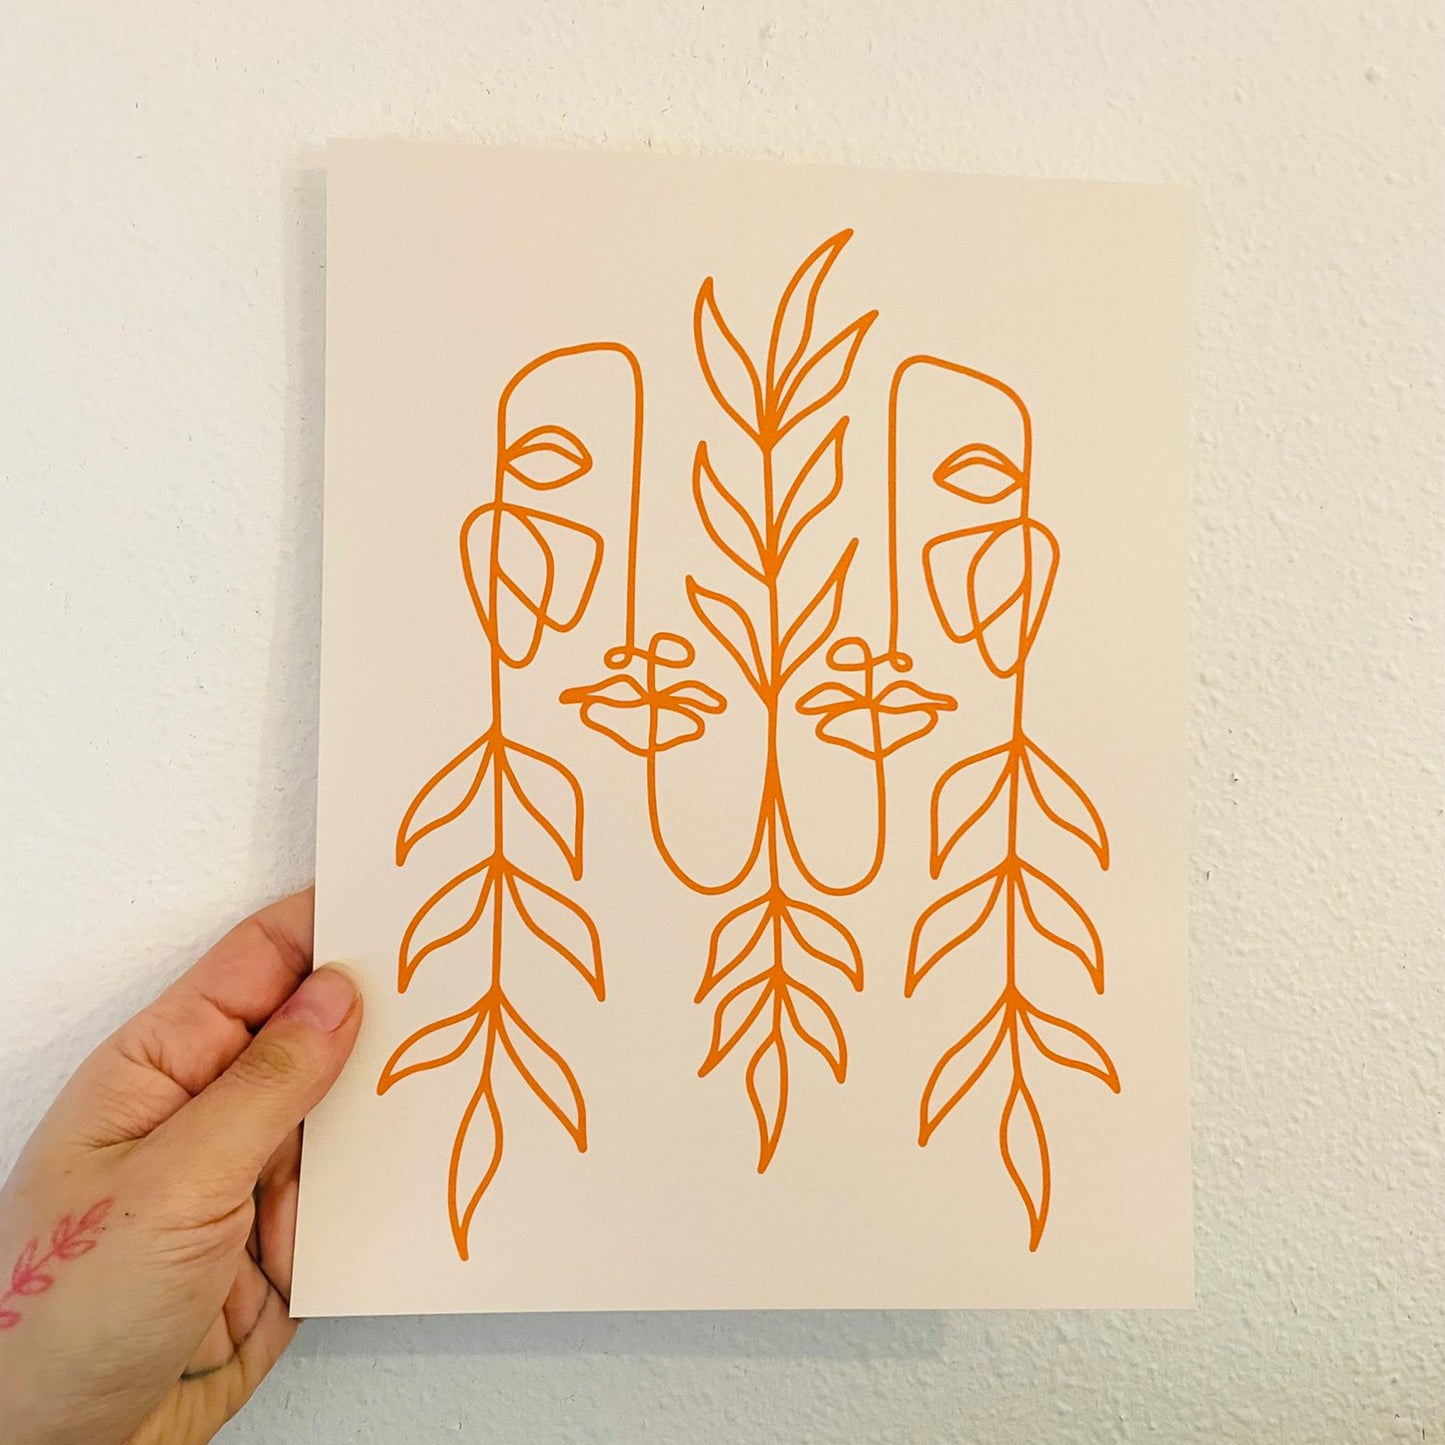 Mercedes Tabish: Autumn Nymph Print